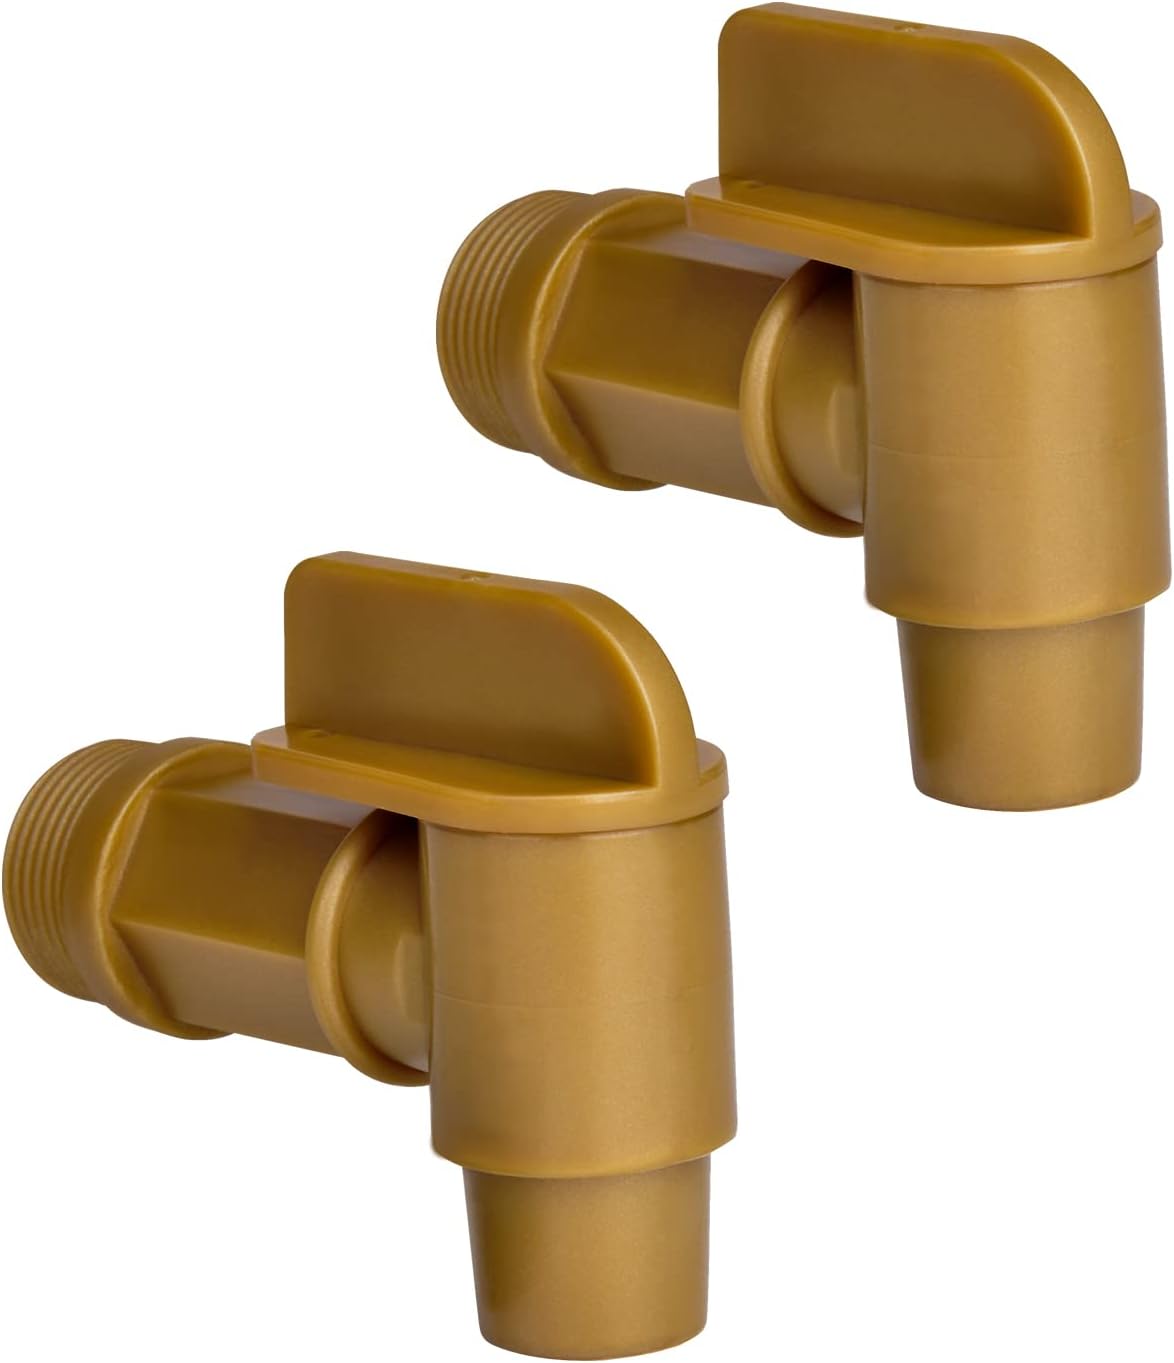 PowGrow Plastic Faucet Spigot, 3/4" NPT Spigot Faucet for 5, 6 Gallon Plastic Drums, Durable Polyethylene Material 3/4" Barre